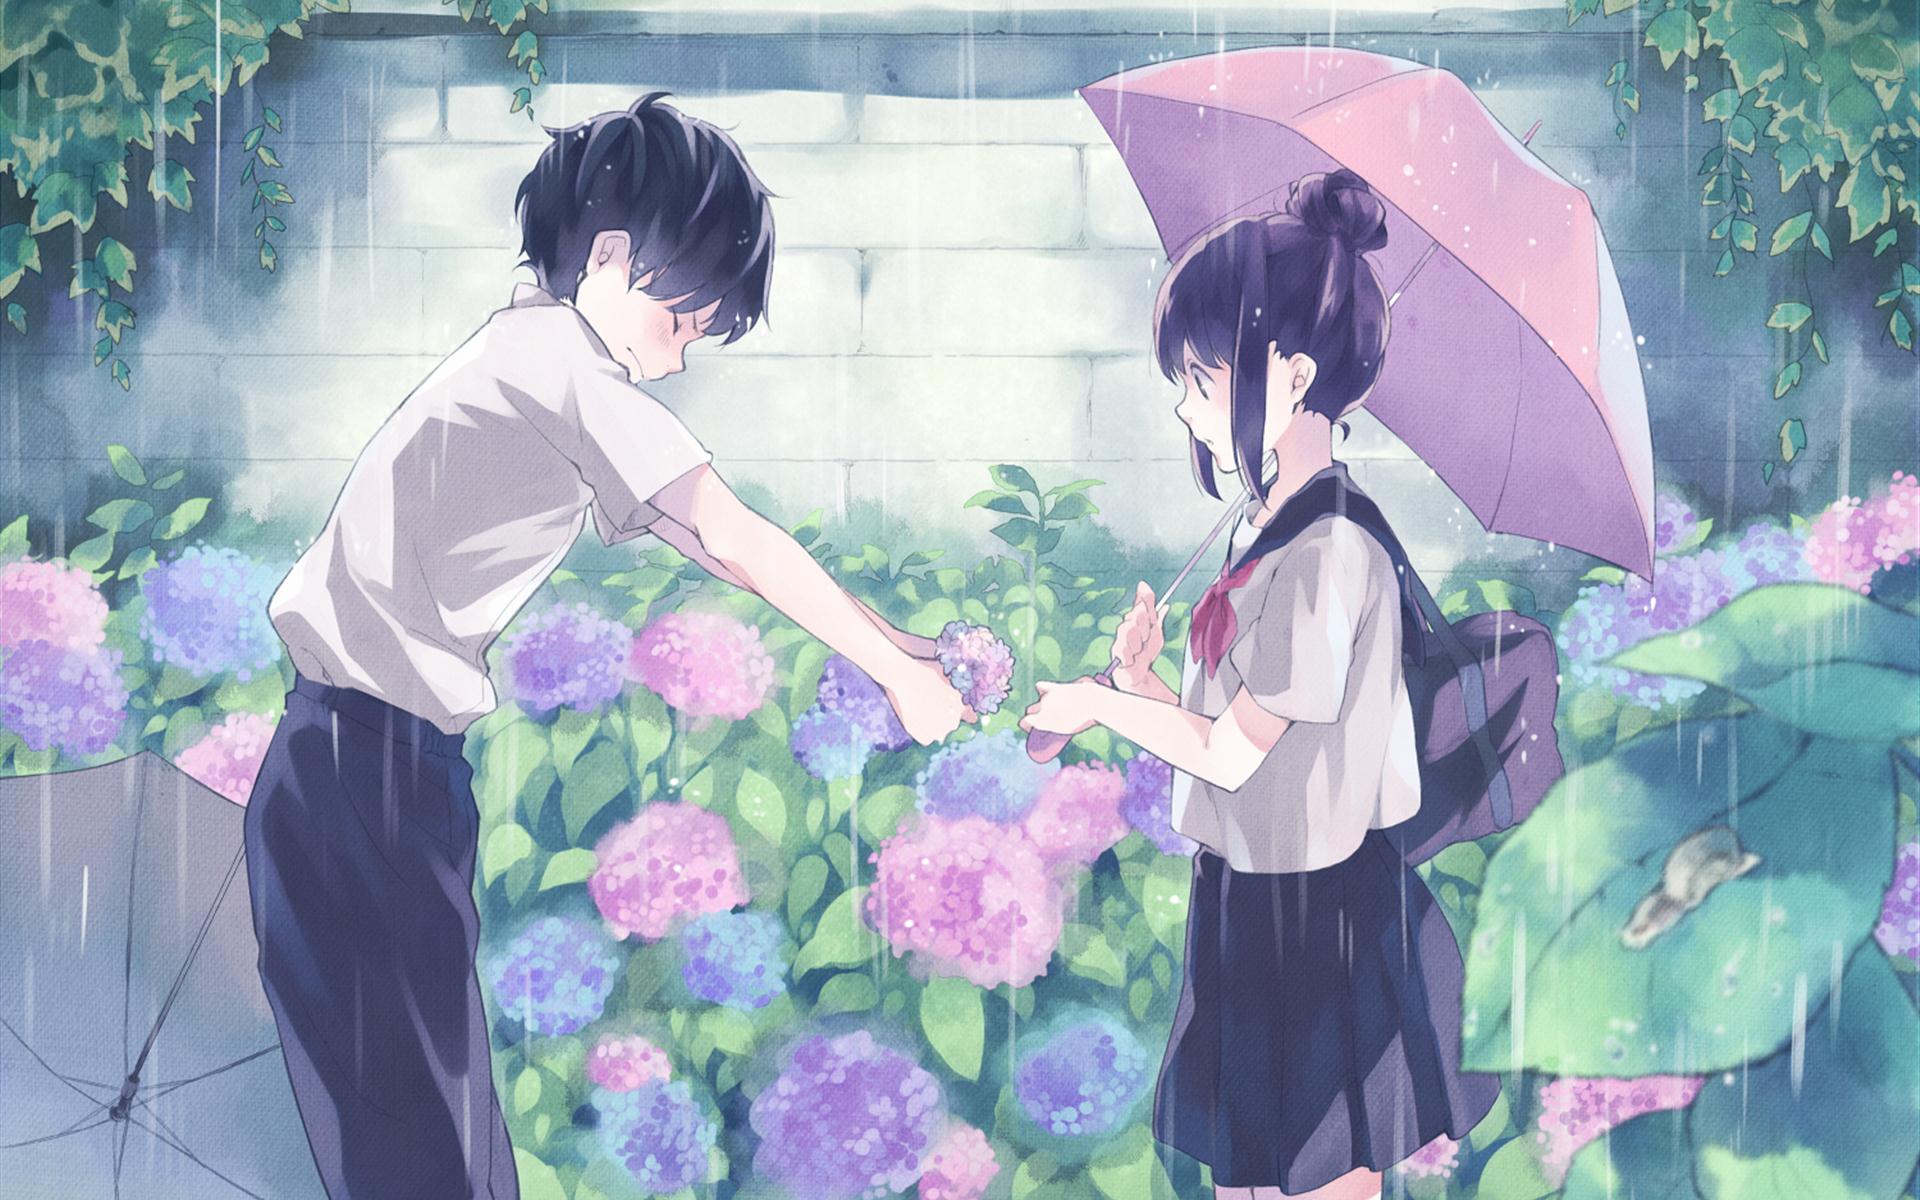 Anime 1920x1200 anime anime boys anime girls anime couple umbrella rain flowers wall school uniform